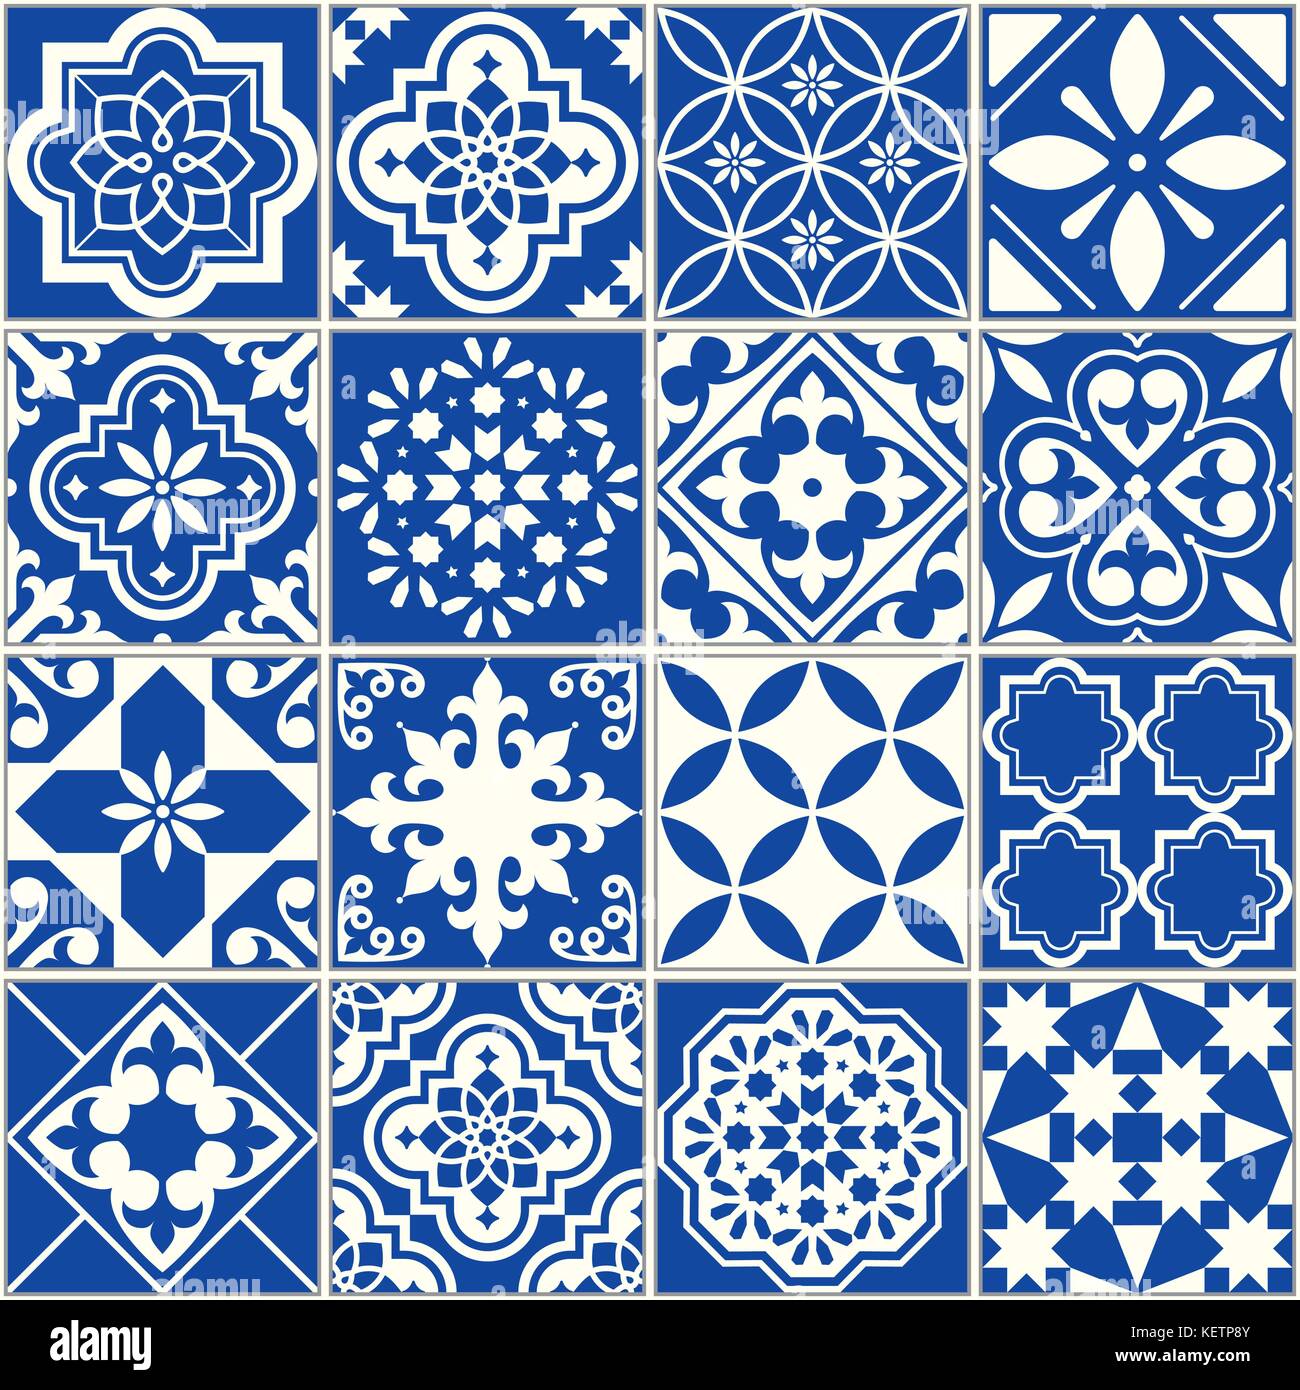 Vecteur espagnol ou portugais, modèle de tuile mosaïque florale de Lisbonne, sans ornement bleu marine Méditerranée Illustration de Vecteur